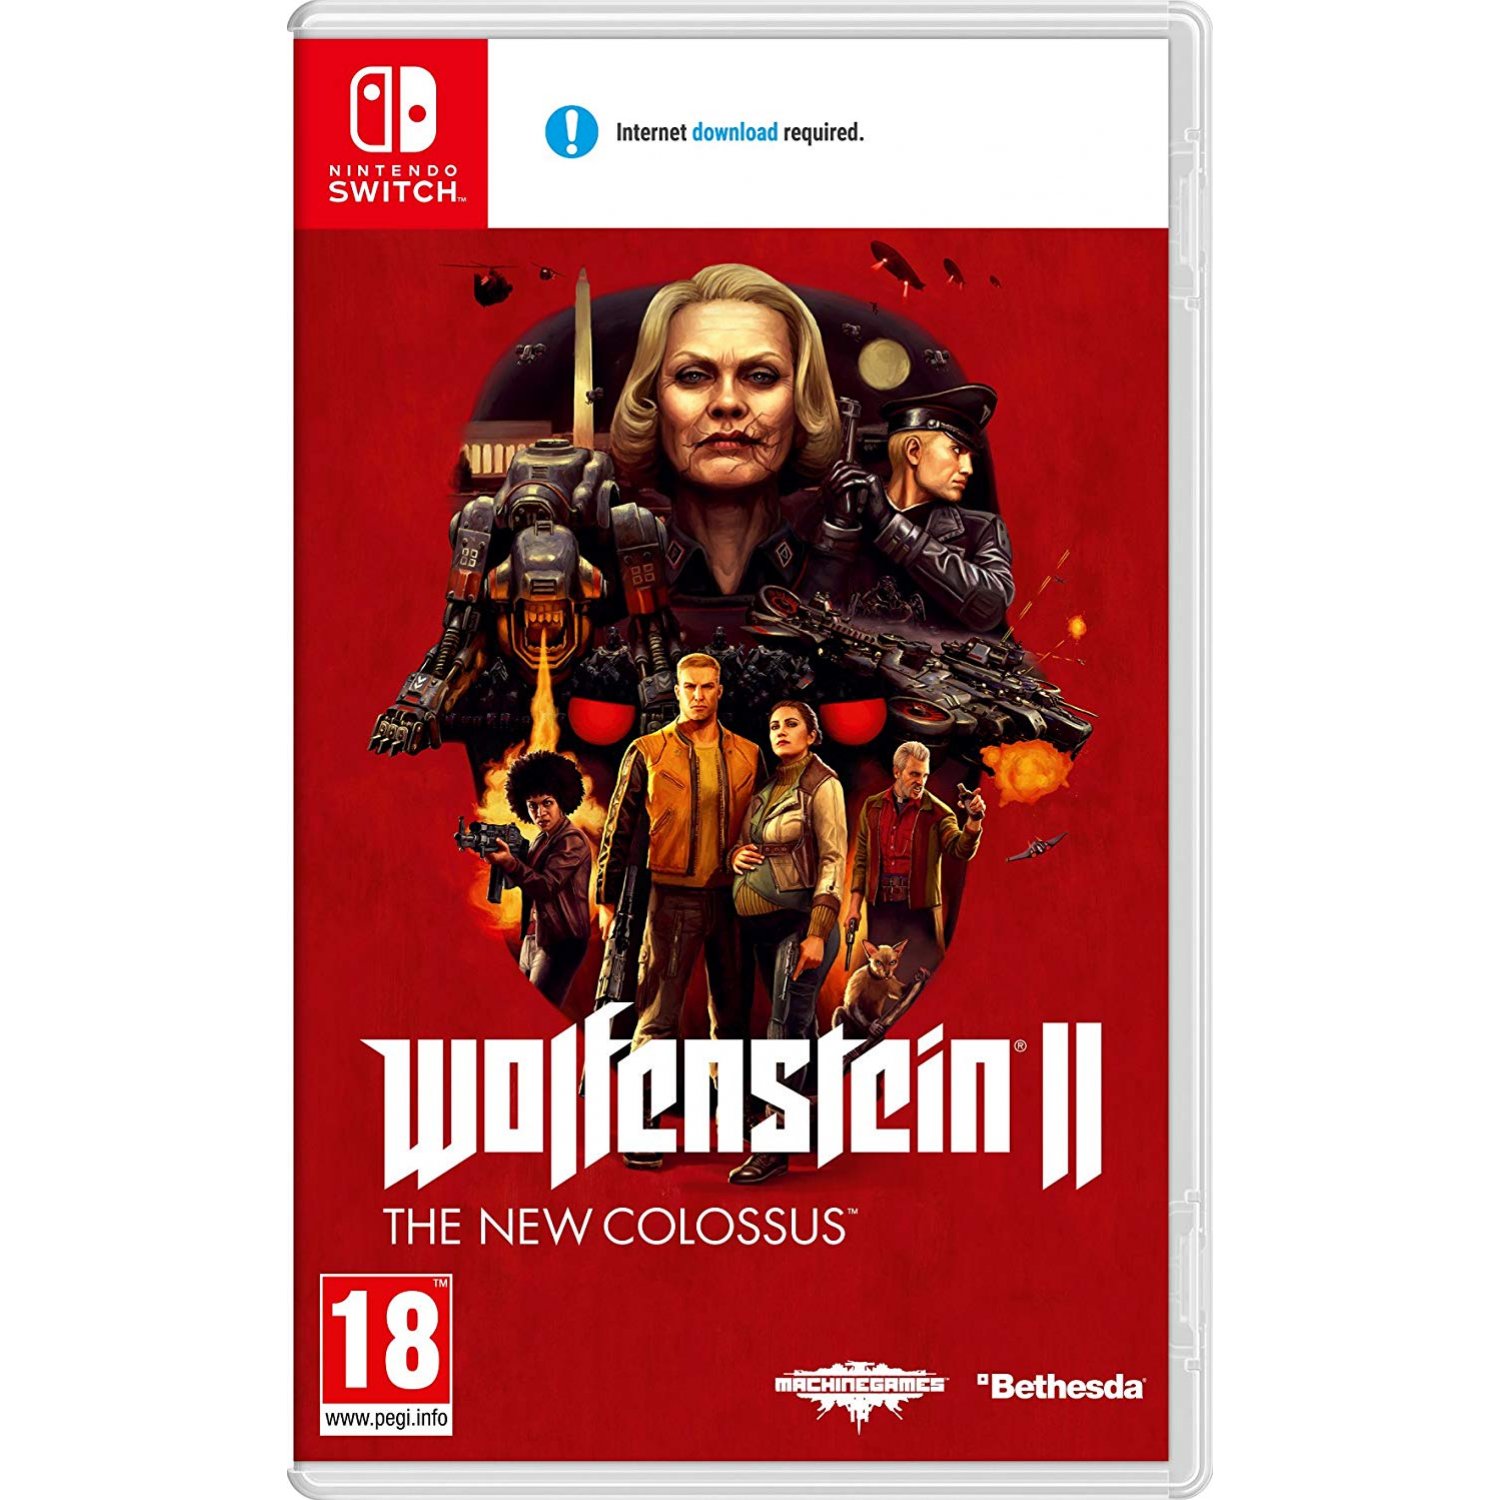 Wolfenstein nintendo. Wolfenstein 2 Nintendo Switch. Wolfenstein II: the New Colossus Nintendo Switch. Вольфенштайн 2 Нинтендо свитч. Wolfenstein II: the New Colossus на Нинтендо.